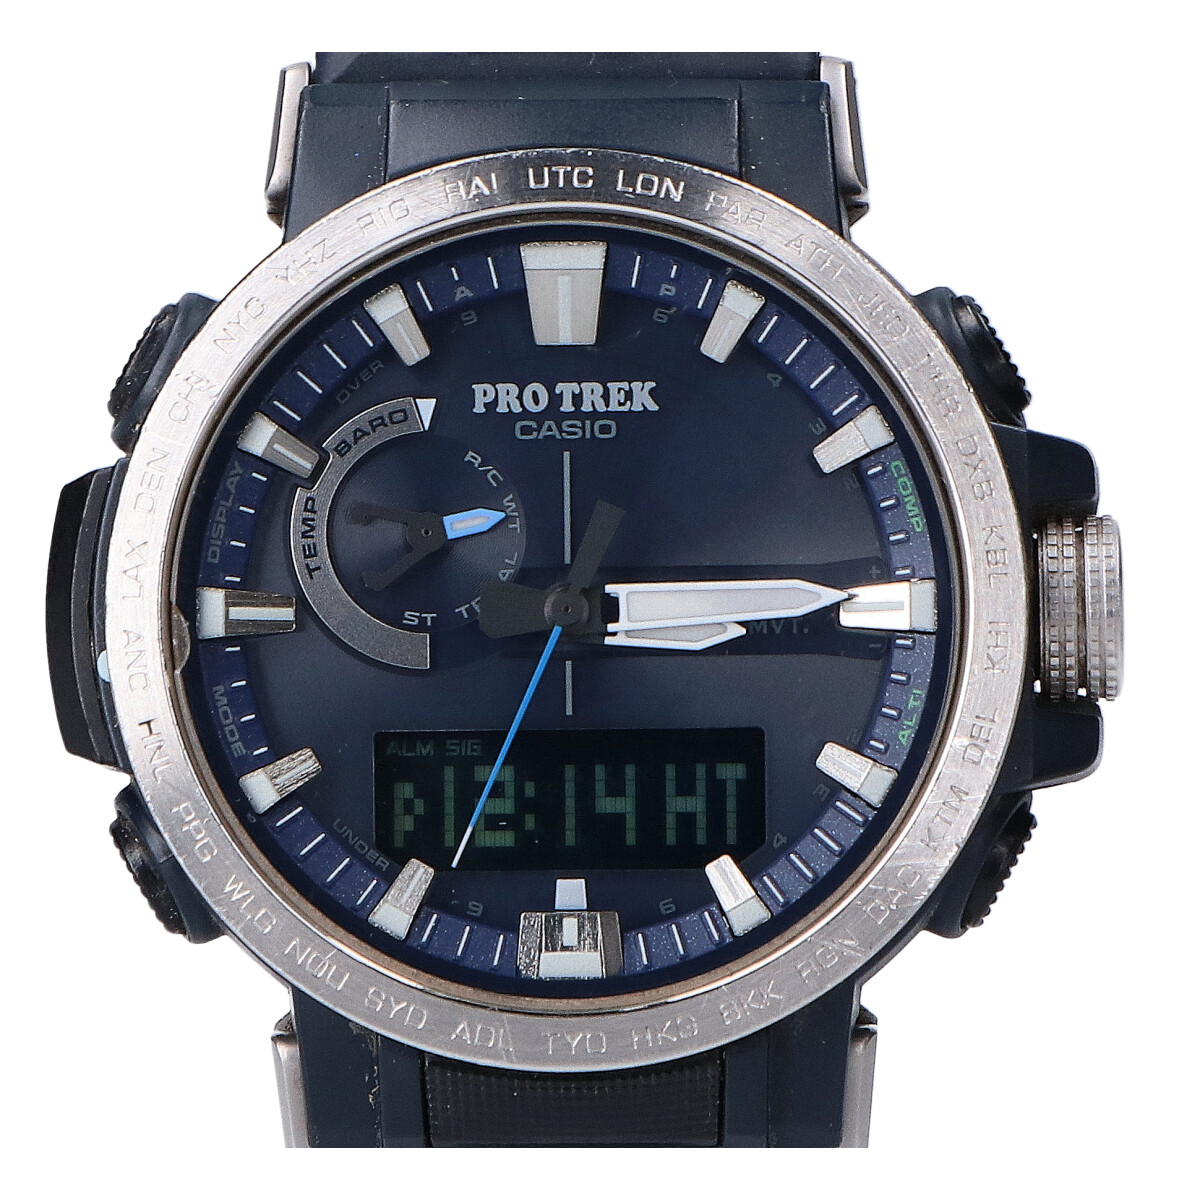 カシオのPRW-60-2AJF PRO TREK Climber Line タフソーラー時計の買取実績です。